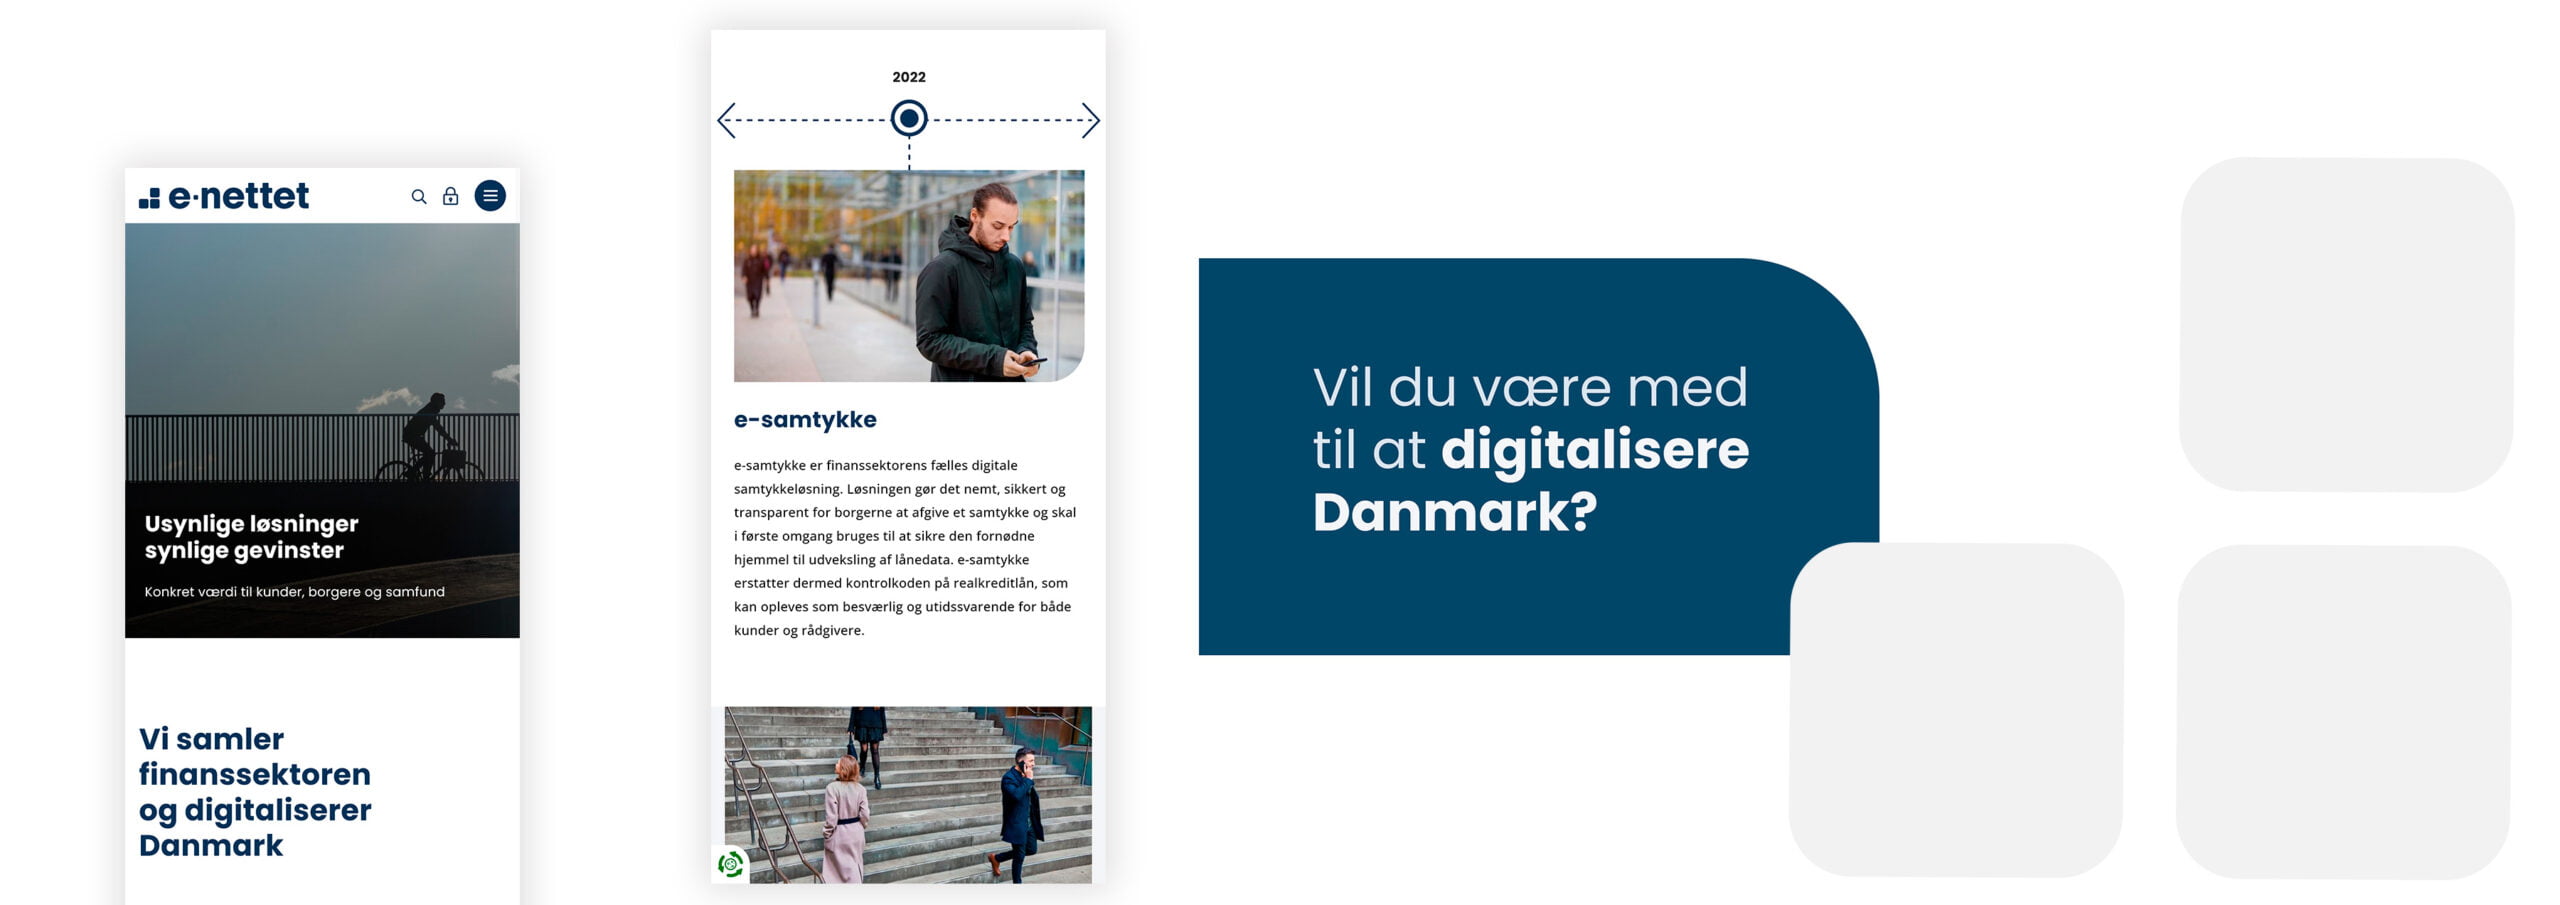 Vil du være med til at digitalisere Danmark?